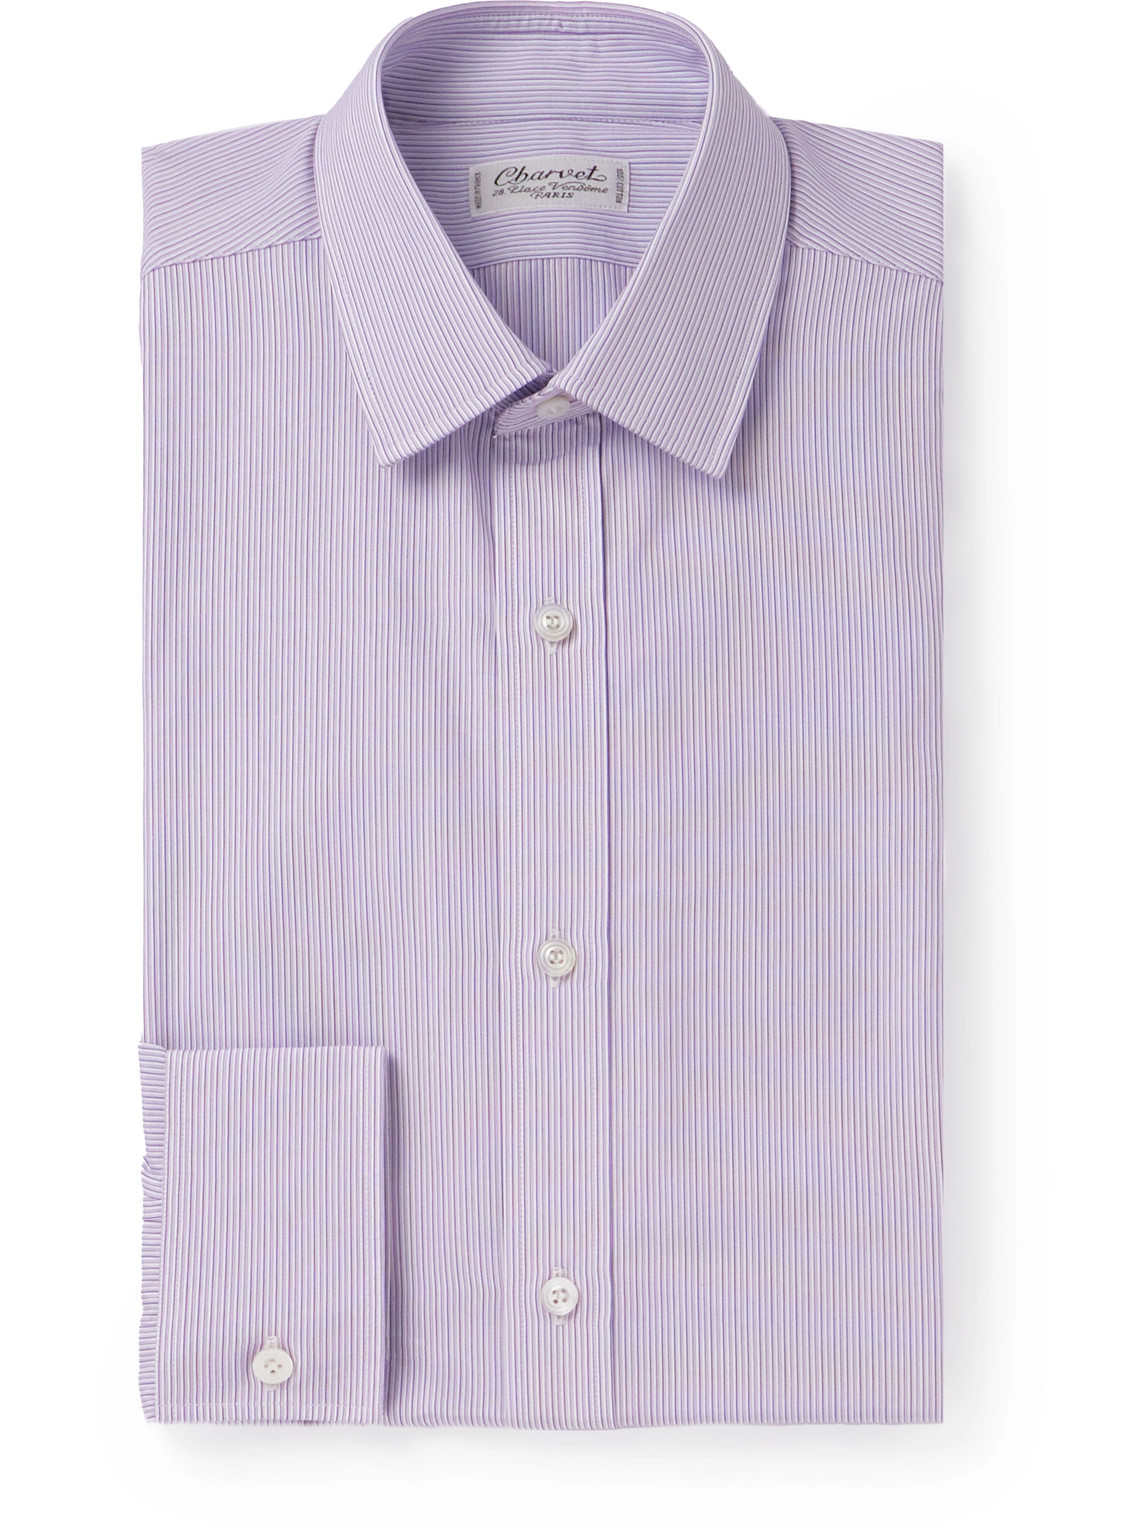 Striped Cotton Oxford Shirt